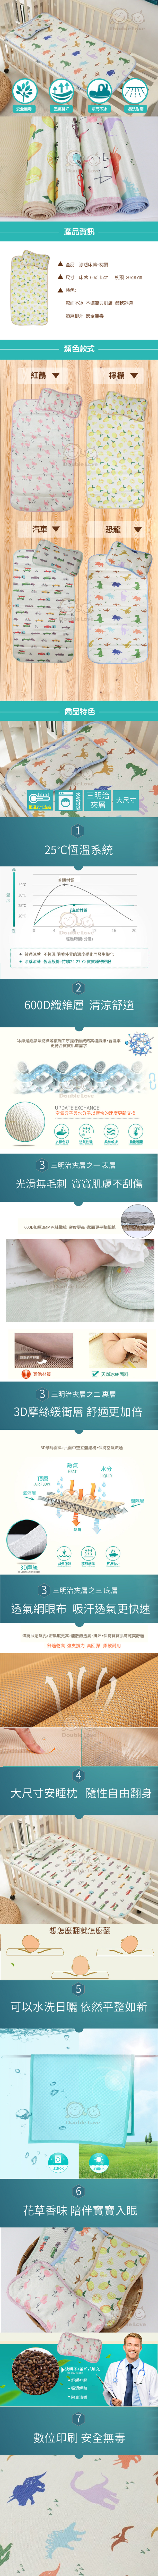 涼感床蓆 床墊 涼蓆+冰絲枕 2件組【NA0001】寶寶 嬰兒床 遊戲墊 嬰兒枕 野餐墊 冰絲涼蓆 抗暑